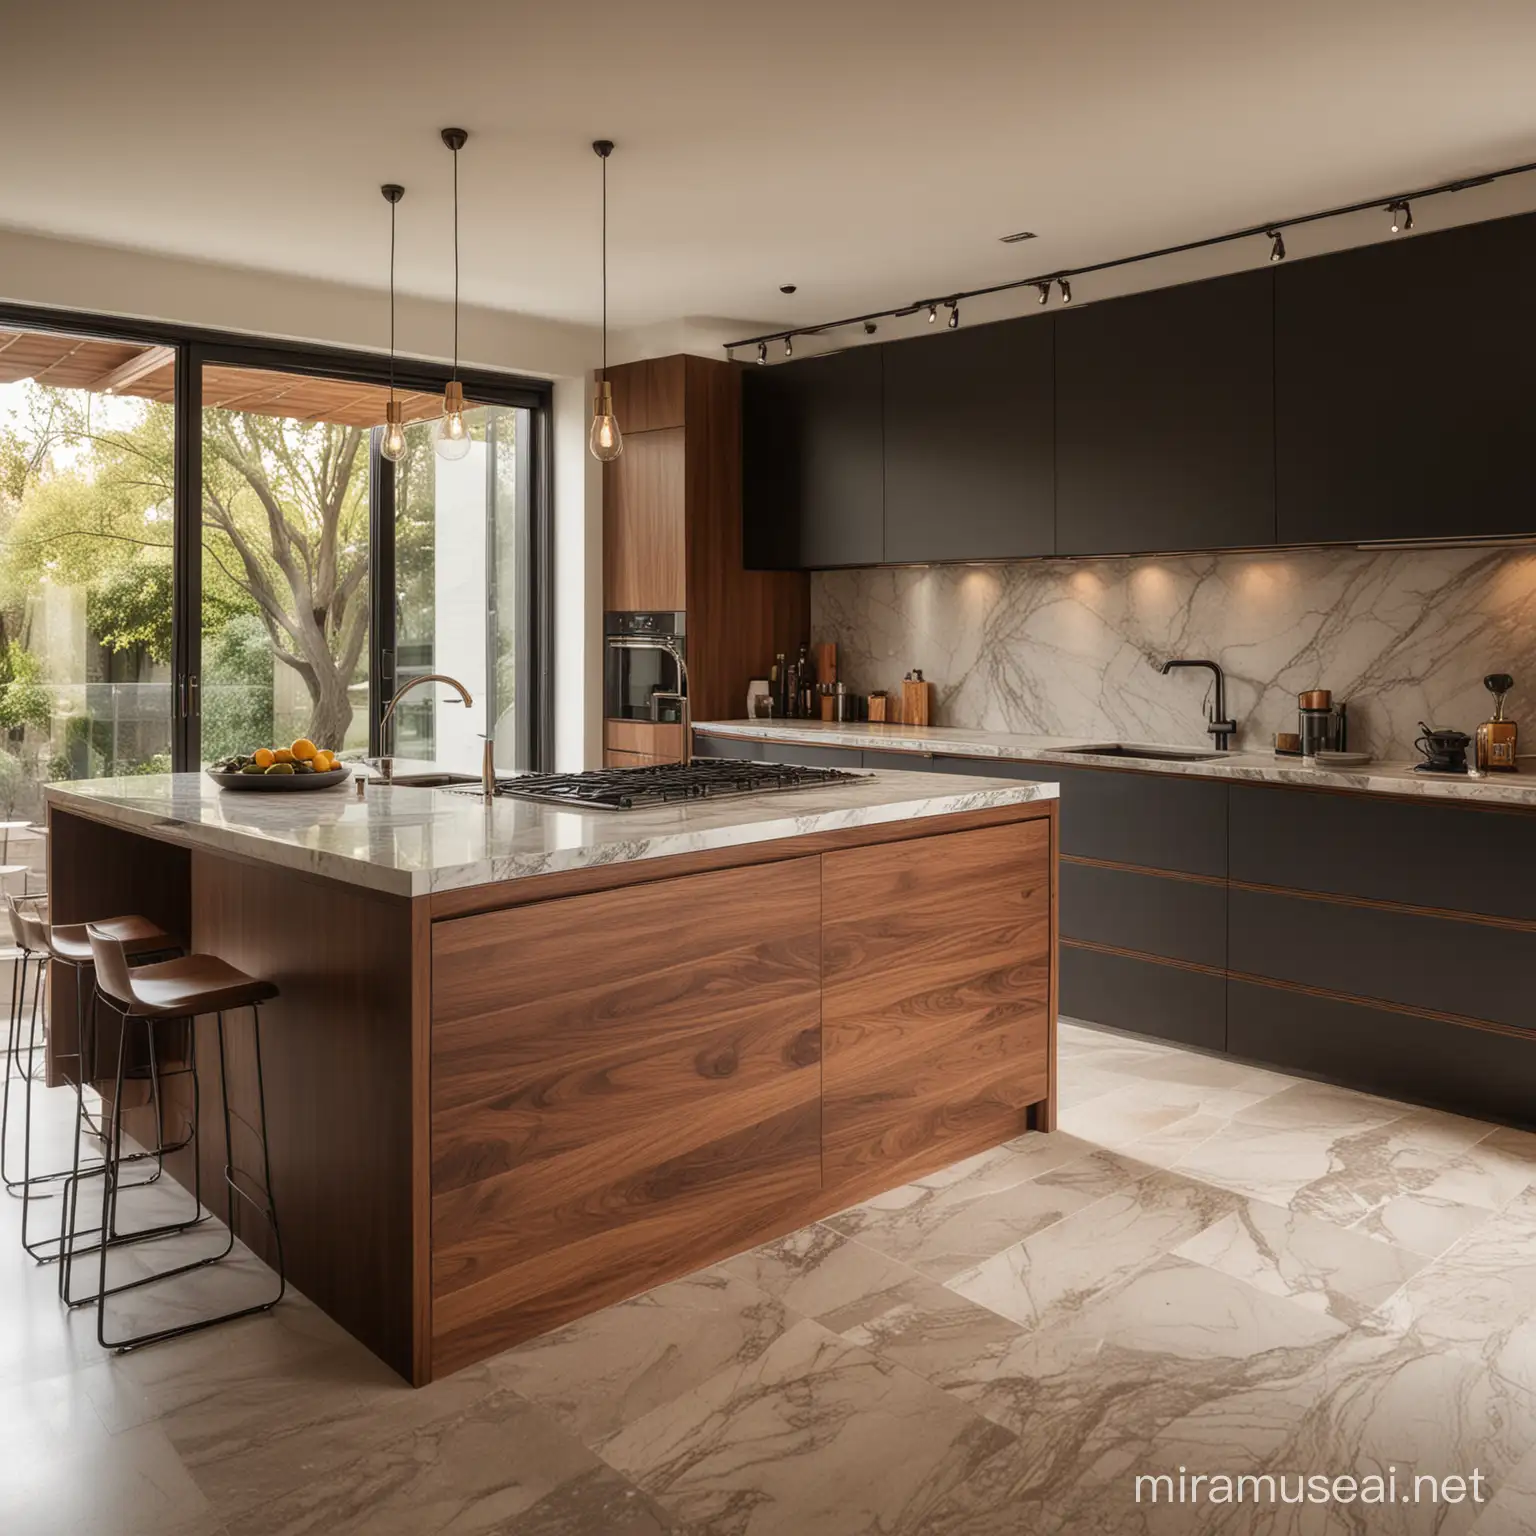 walnut, black, brown, marble, modern kitchen, warm light 